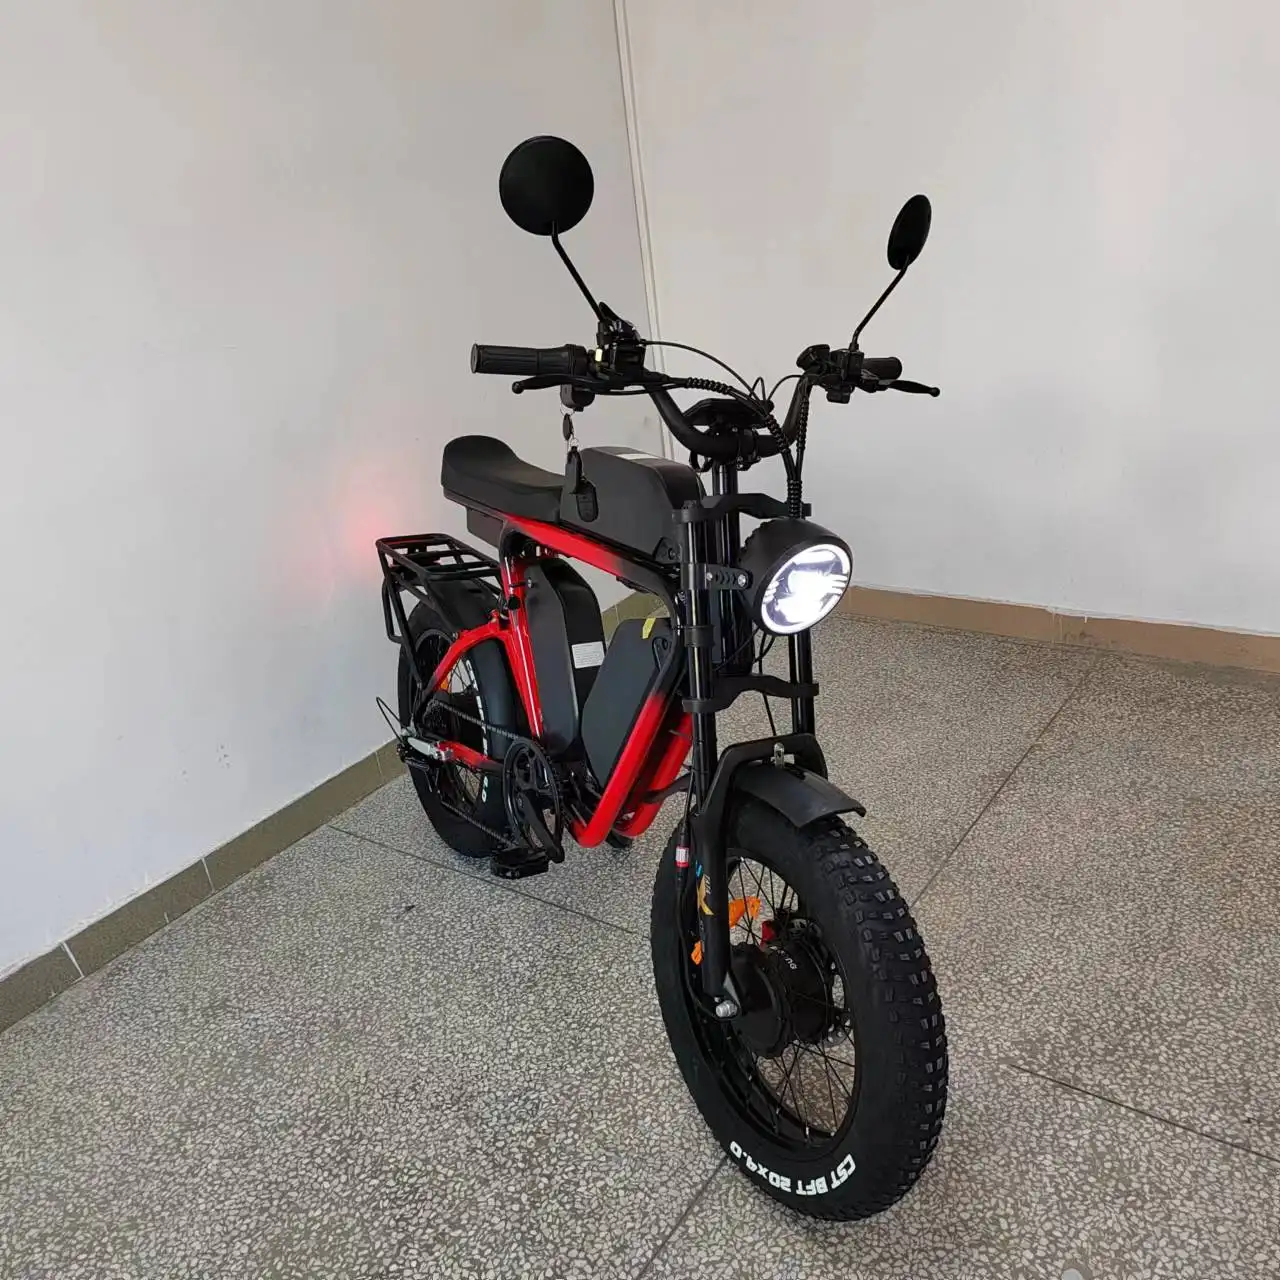 Bafang-bicicleta eléctrica de doble Motor de 52V, bici con Triple batería, 66Ah, freno de aceite, suspensión completa, MTB, 55kmh, neumático ancho